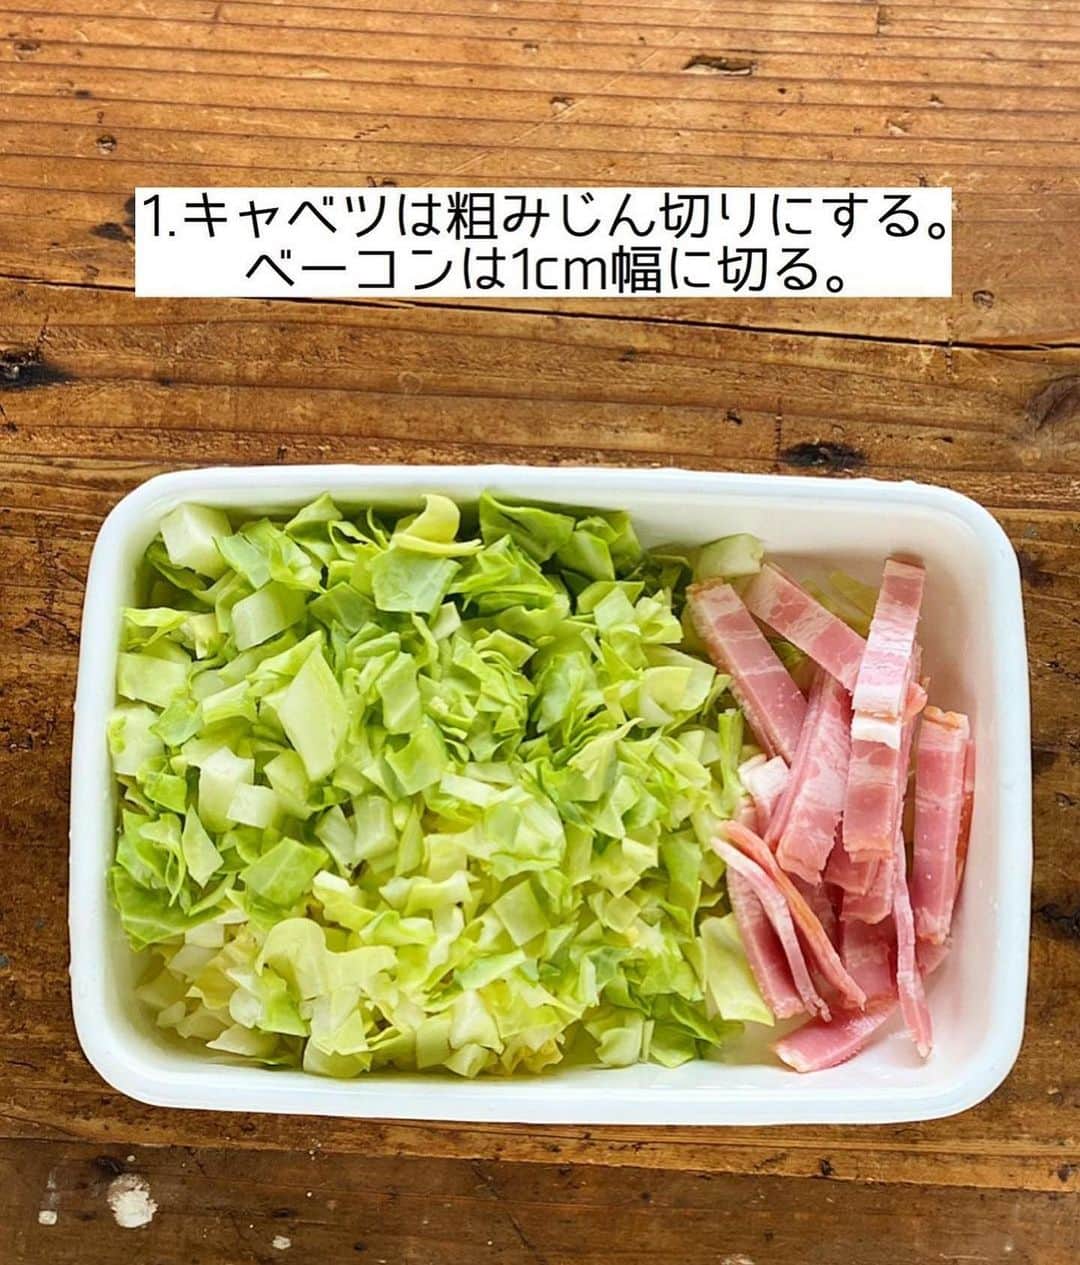 Mizuki【料理ブロガー・簡単レシピ】さんのインスタグラム写真 - (Mizuki【料理ブロガー・簡単レシピ】Instagram)「・朝食やあと一品に💕 ⁡ ［#レシピ ］ ーーーーーーーーーーーーーーーーー キャベツとベーコンのミルクスープ ーーーーーーーーーーーーーーーーー ⁡ ⁡ ⁡ おはようございます☺️   今日ご紹介させていただくのは  \ キャベツとベーコンのミルクスープ /  (再掲載✨)   軽くとろみをつけて食べやすく  ほっこり優しい味わいに仕上げました♩  あっという間にできるので  朝食やあと一品にもおすすめですよ〜💕   まだ朝晩は肌寒いので  よかったらお試し下さいね😋 ⁡ ⁡ 【簡単・時短・節約レシピ更新中🔻】 @mizuki_31cafe ⁡ ⁡ ⁡ ＿＿＿＿＿＿＿＿＿＿＿＿＿＿＿＿＿＿＿ 【2人分】  キャベツ...3枚(150g)  ベーコン...2枚  オリーブオイル...小1  薄力粉...小2  ●水...100ml  ●牛乳...300ml  ●コンソメ...大1/2  ●塩こしょう...少々    1.キャベツは粗みじん切りにする。ベーコンは1cm幅に切る。  2.鍋にオリーブオイルを中火で熱して1をさっと炒め、薄力粉を加えて更に1分炒める。  3.●を加え、混ぜながら4〜5分煮る。  ￣￣￣￣￣￣￣￣￣￣￣￣￣￣￣￣￣￣ ⁡ ⁡ 《ポイント》 ♦︎普通のキャベツでも春キャベツでも同じように作れます♩  ♦︎工程3では吹きこぼれないように火加減を調節して下さい♩  ♦︎牛乳の代わりに豆乳を使う場合、分離する可能性がございますので注意してください☆ ⁡ ⁡ ⁡ ⁡ ⁡ 💬💬💬 ブログの引っ越しにお付き合いいただいて 本当にありがとうございました🙇‍♀️ なんとか無事に更新することができ とりあえずほっとしています。涙 ⁡ そして昨日書いてて思ったのですが 私のブログ歴も10年くらいになっていて。 10年って•••そりゃ歳もとるわなって😅 この10年でSNSも、そしてその捉え方も 大きく変わったような気がします✨ ⁡ ある意味すごい時代に生きてるなって そんな風に思いました。。 ⁡ ⁡ ⁡ ⁡ ⁡ 𖤣𖥧𖥣𖡡𖥧𖤣✨ 愛用している調理器具や器などは #楽天ROOMに載せてます ‎𐩢𐩺 (ハイライトから飛べます🛍) ⁡ ⁡ ⁡ ⁡ ⁡ ⁡ 🔶全国の書店・ネット書店で発売中🔶 ⁡ ✼••┈┈┈┈┈••✼••┈┈┈┈┈••✼ 今日のごはんこれに決まり！ ‎𓊆#Mizukiのレシピノート 500品𓊇 ✼••┈┈┈┈┈••✼••┈┈┈┈┈••✼ ⁡ ˗ˏˋ おかげさまで23万部突破 ˎˊ˗ 料理レシピ本大賞準大賞を受賞しました🙇‍♀️ ⁡ 6000点の中からレシピを厳選し まさかの【500レシピ掲載】❣️ 肉や魚のメインおかずはもちろん 副菜、丼、麺、スープ、お菓子 ハレの日のレシピ、鍋のレシピまで 全てこの一冊で完結𓌉◯𓇋✨ ⁡ ⁡ ⁡ 📕新刊発売中📕 ⁡ ✼••┈┈┈••✼••┈┈┈••✼ Mizukiのカンタン手作り   𓊆 #3時のおやつ 𓊇 ✼••┈┈┈••✼••┈┈┈••✼ ⁡ 『3分クッキング』で連載中の 「Mizukiのカンタン手作り」 ‎4年分のおやつが1冊になりました！ ❝オーブンなしで❞ 身近な材料と道具でできる 簡単、手軽なおやつを80品🍪 ⁡ ⁡ ⁡ ⁡ ⁡ ⁡ #キャベツとベーコンのミルクスープm #キャベツ #キャベツレシピ #春キャベツ #ベーコン #牛乳 #牛乳レシピ #スープ #スープレシピ #料理 #時短レシピ  #節約料理 #簡単料理  #時短料理  #mizukiレシピ  #アルモンデ #節約レシピ #簡単レシピ」3月30日 7時34分 - mizuki_31cafe